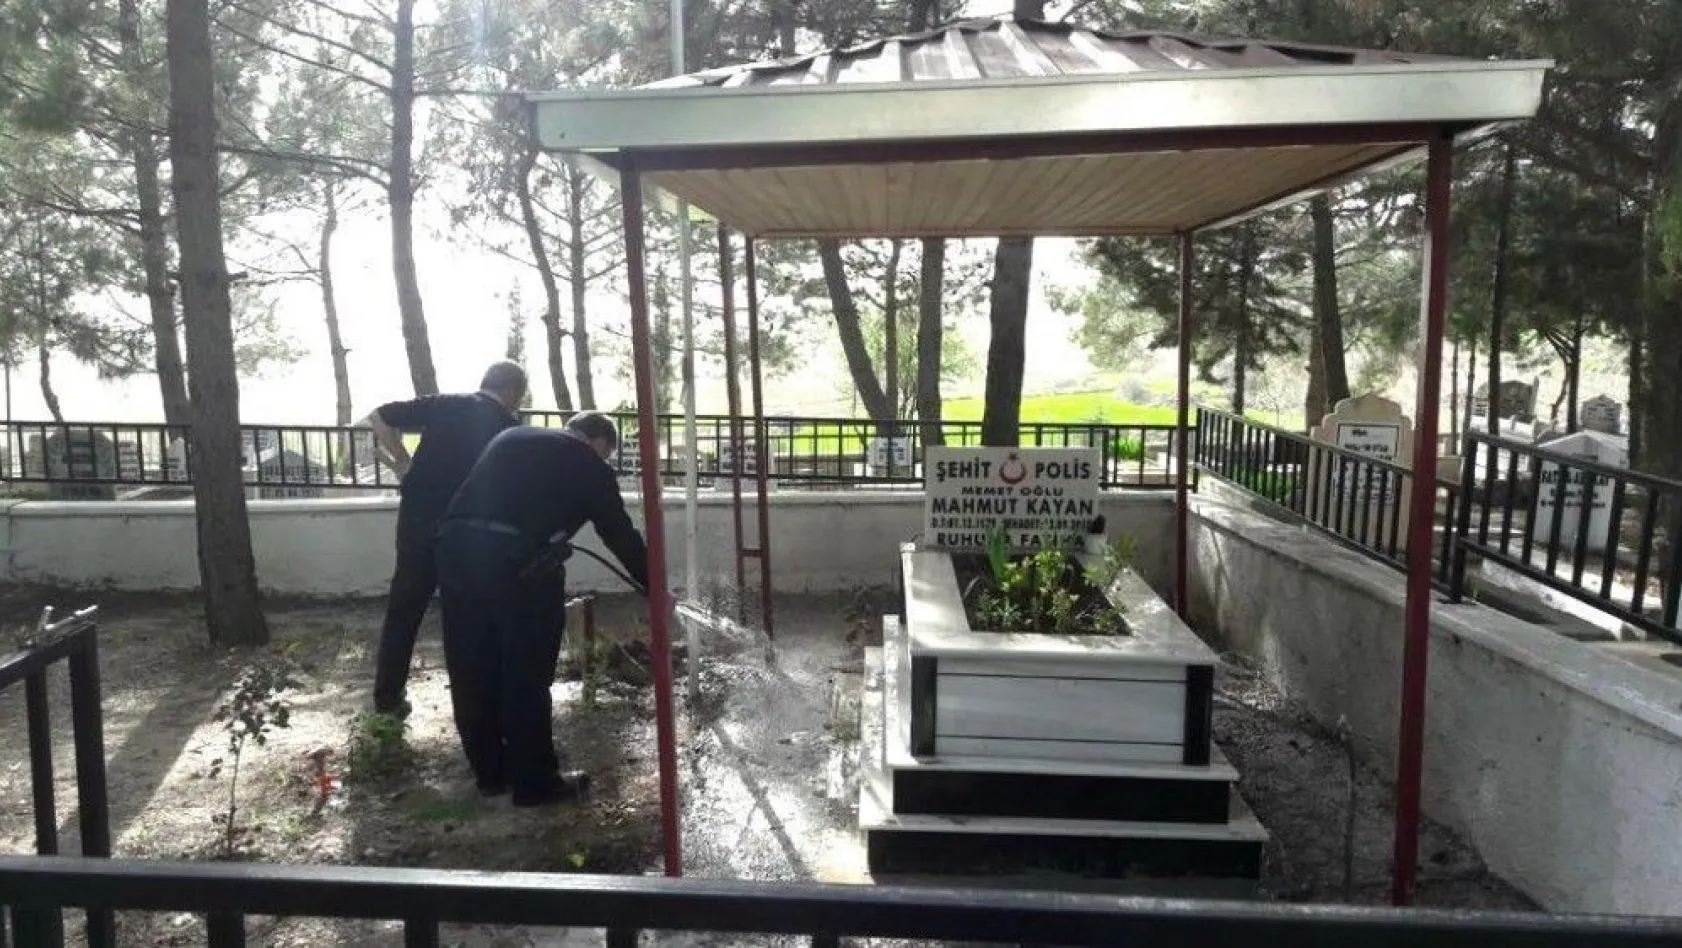 Polisi Şehit Kayan'ın mezarını temizledi
